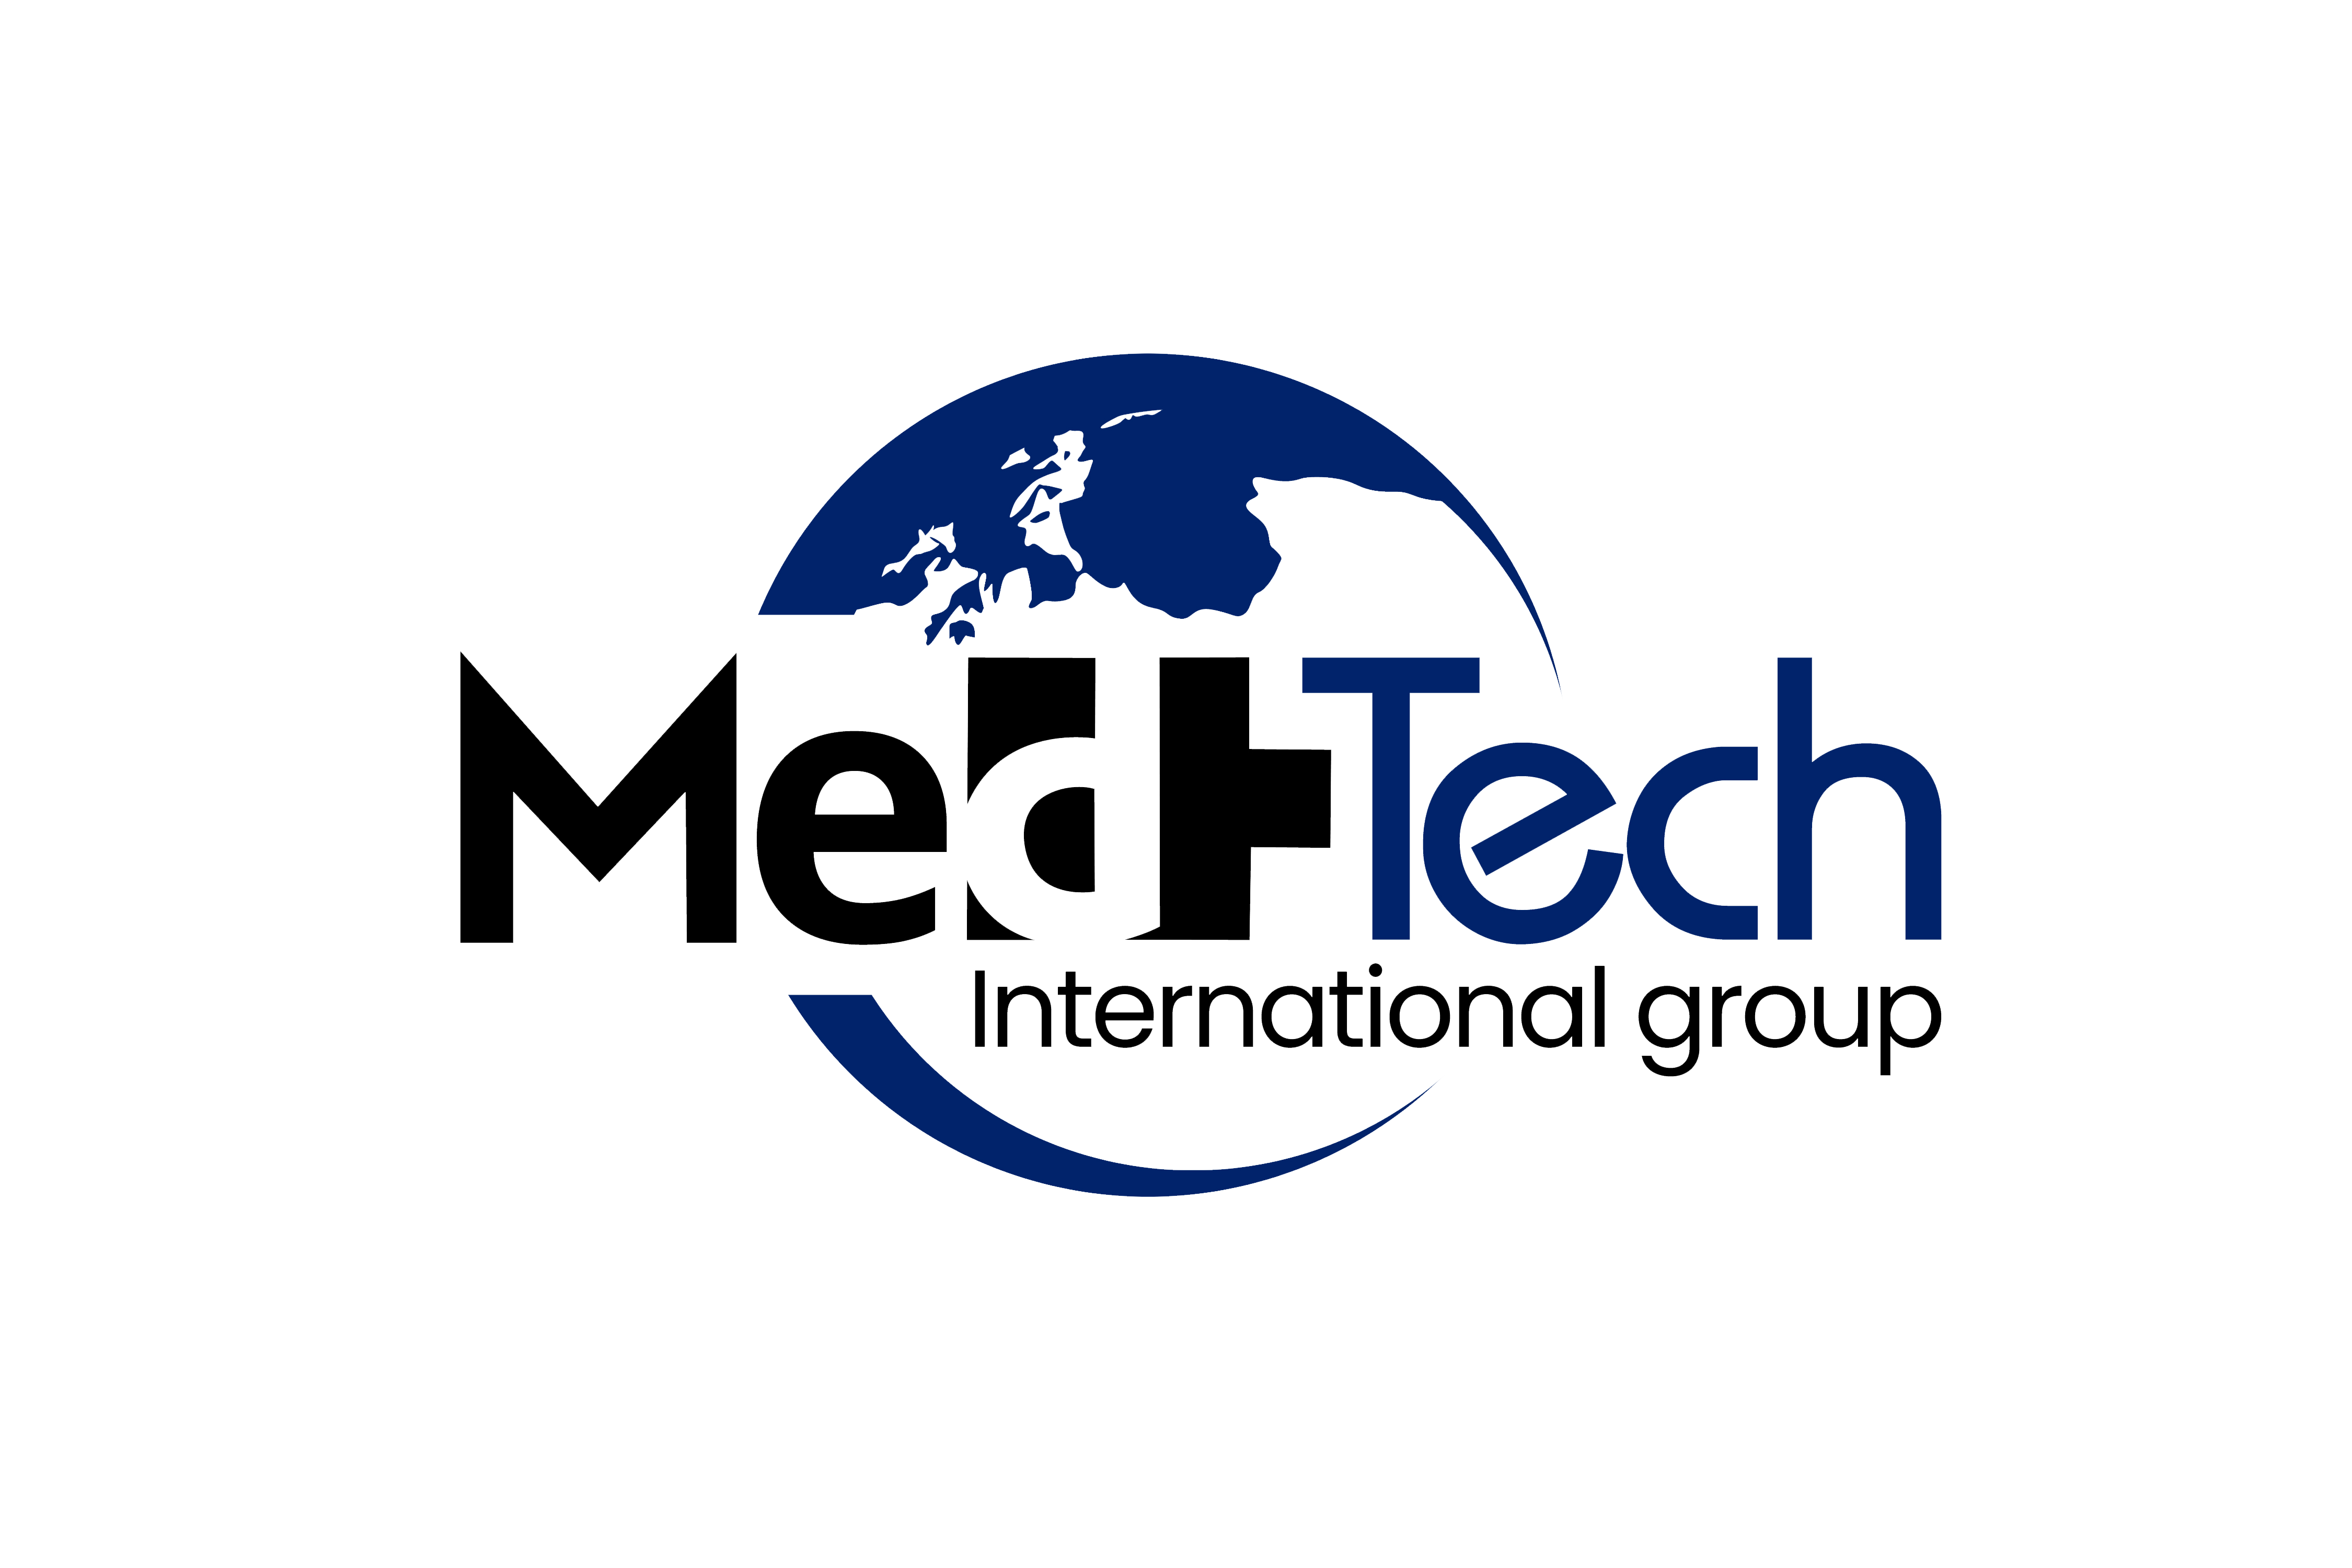 MedTech International Group